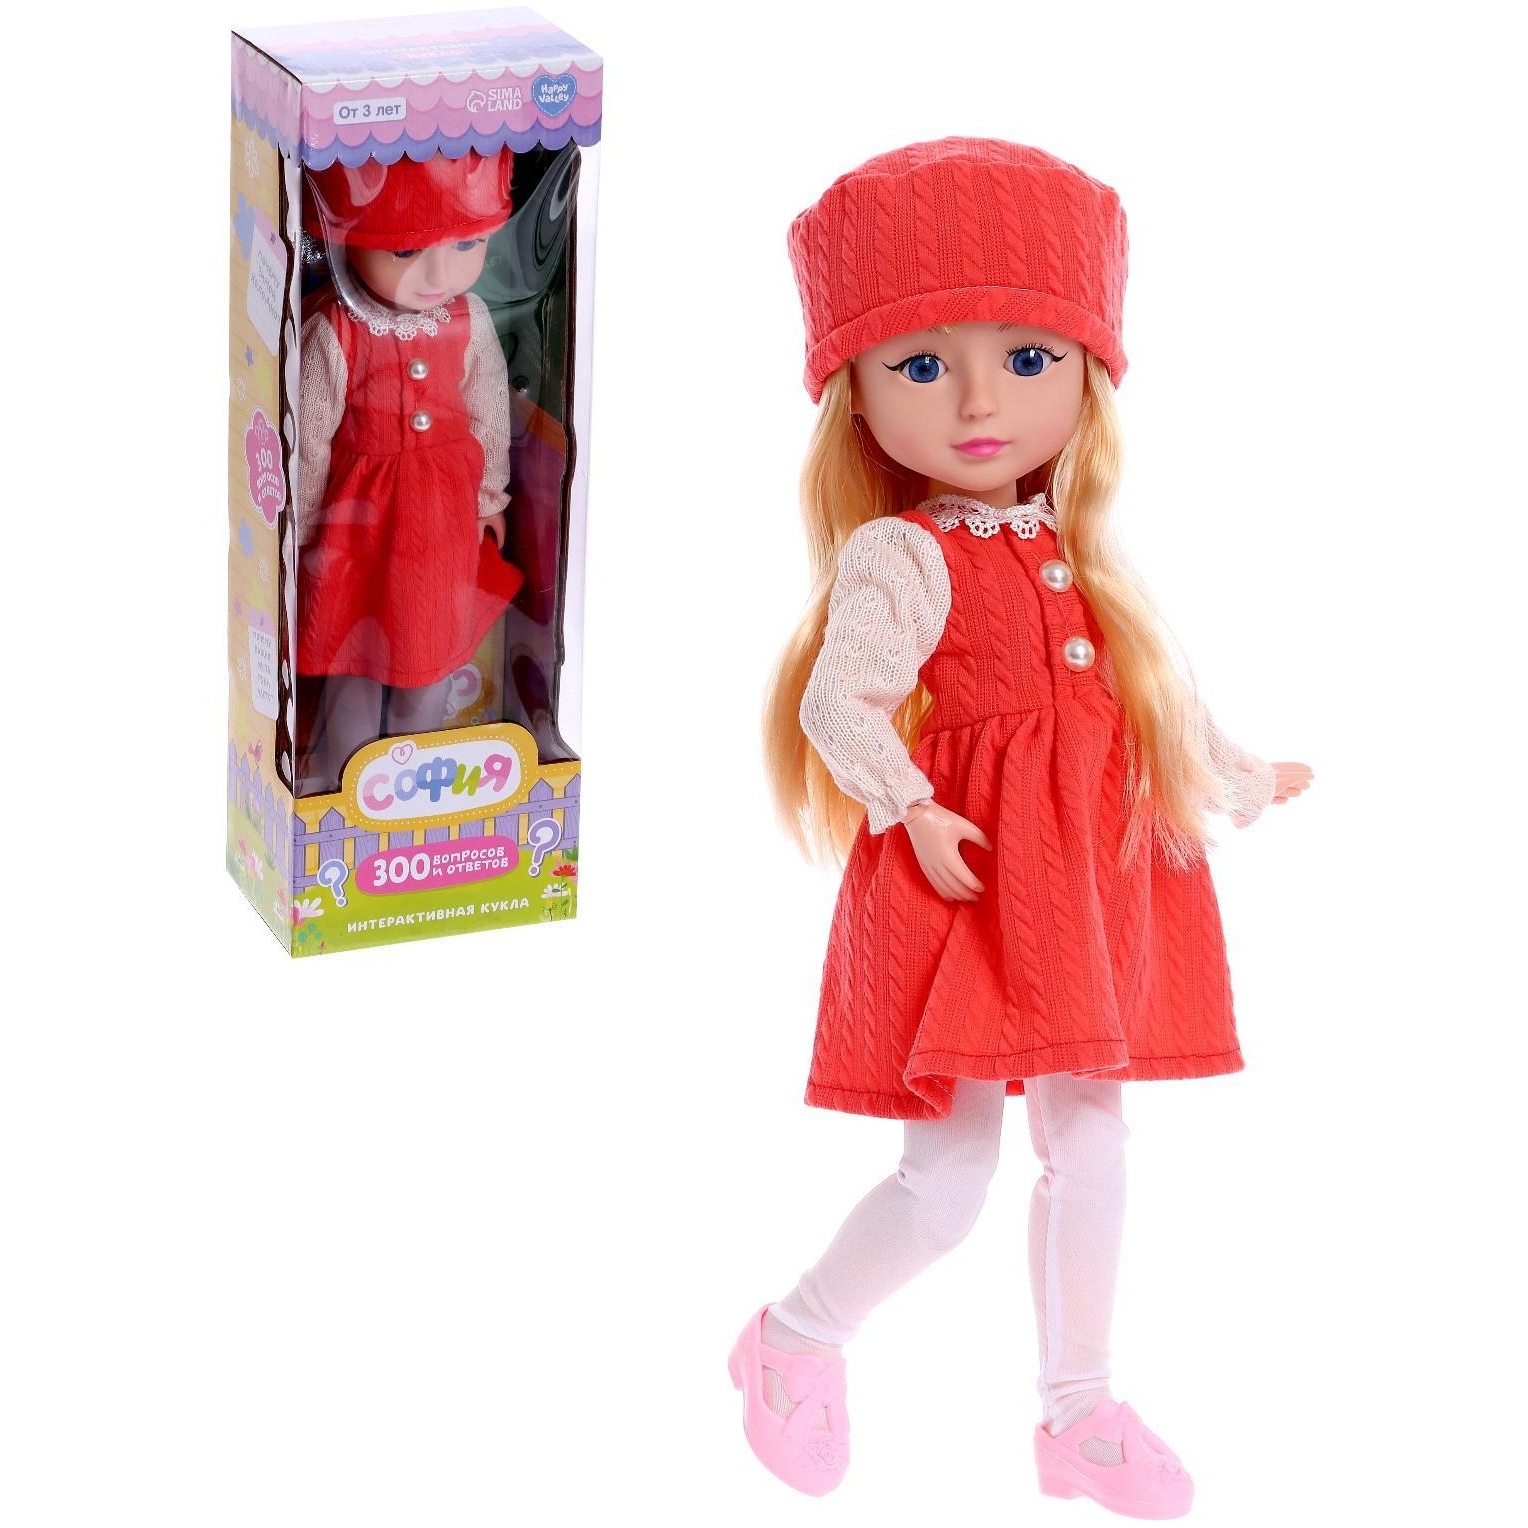 Кукла "София" в красном платье и шапочке (300 вопросов и ответов, 47 см)